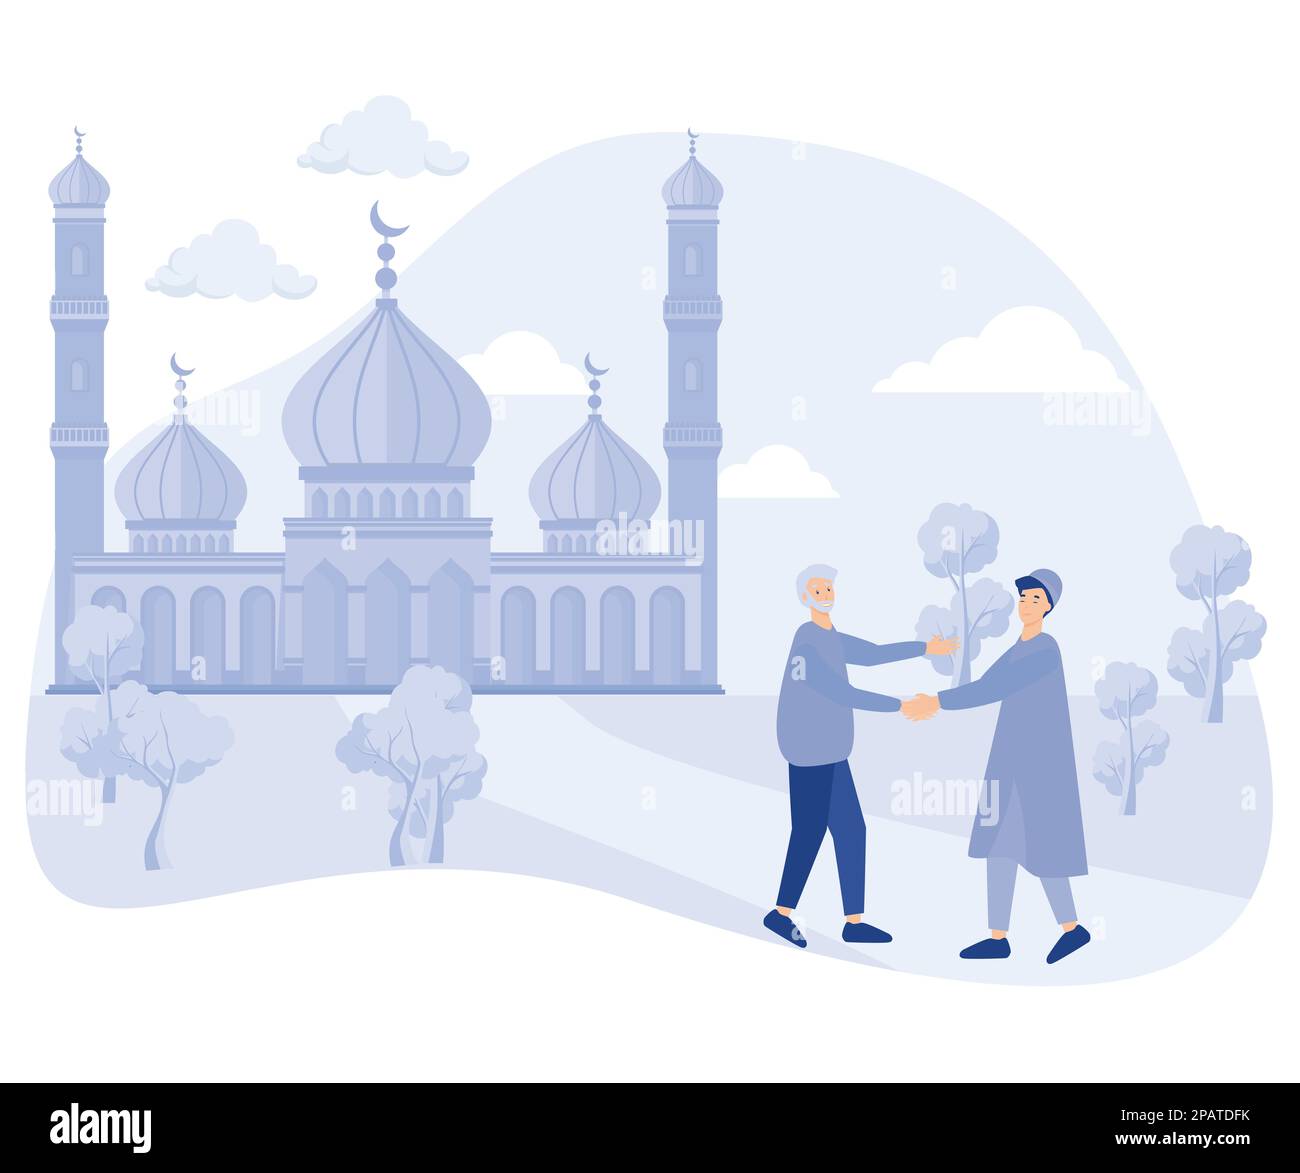 Les musulmans se rencontrent, puis se secouent et disent Assalamualaïkum dans la cour de la mosquée après Shalat, illustration moderne à vecteur plat Illustration de Vecteur